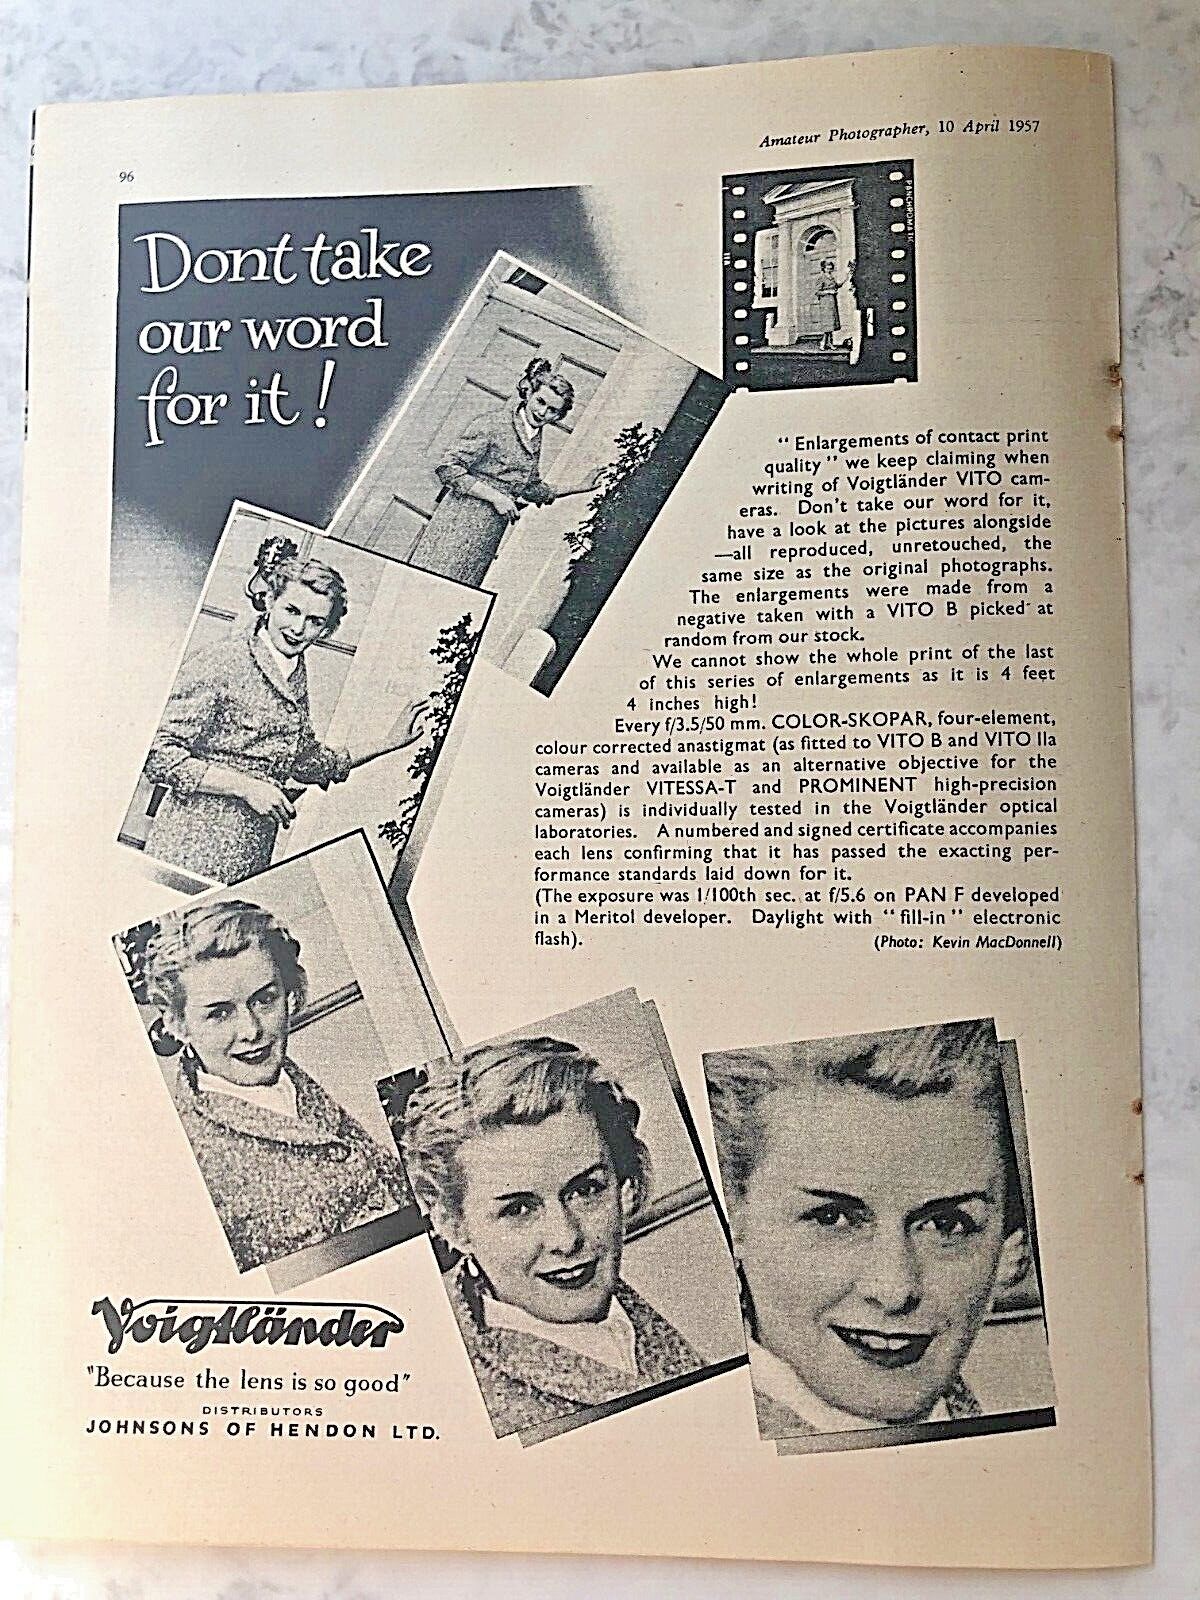 1957 Advert JOHNSONS HENDON VOIGTLANDER VITO CAMERA LENS SO GOOD ENLARGEMENTS